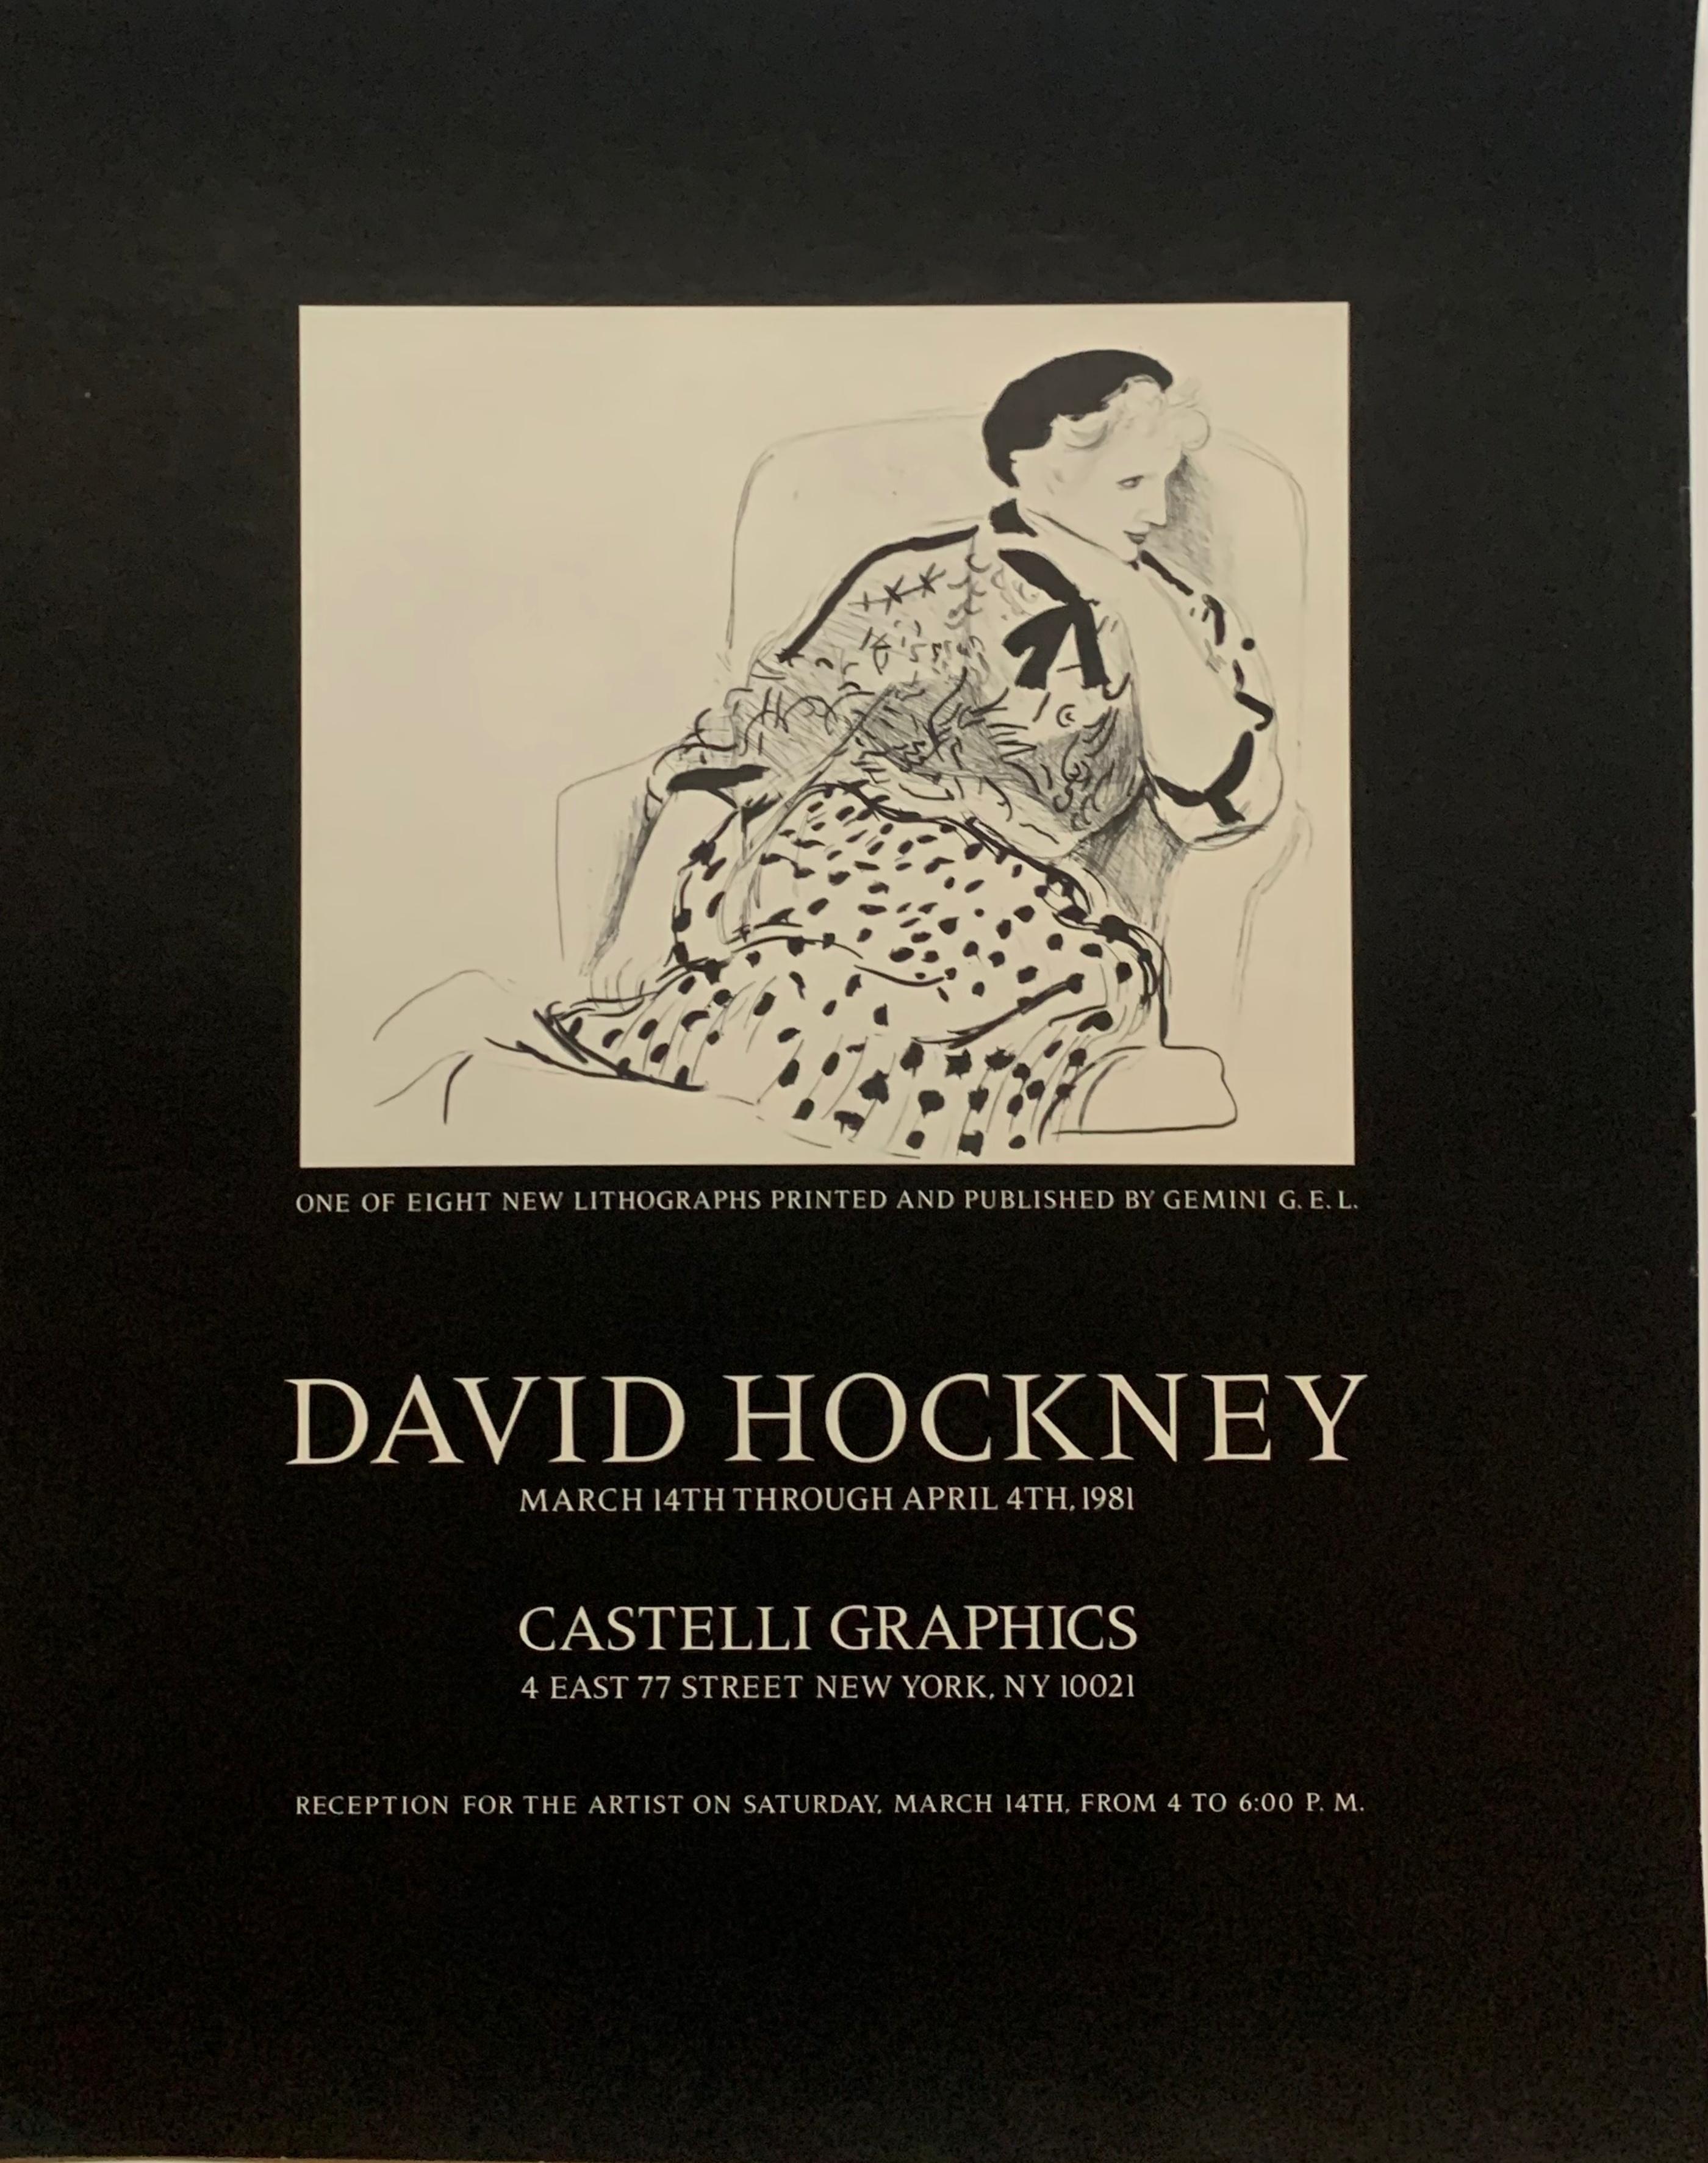 David Hockney
David Hockney chez Castelli Graphics, 1981
Poster en lithographie offset
20 × 16 pouces
Non encadré
Rare affiche de 1981 publiée à l'occasion de la sortie d'une série de nouveaux tirages de David Hockney publiés par Gemini GEL et